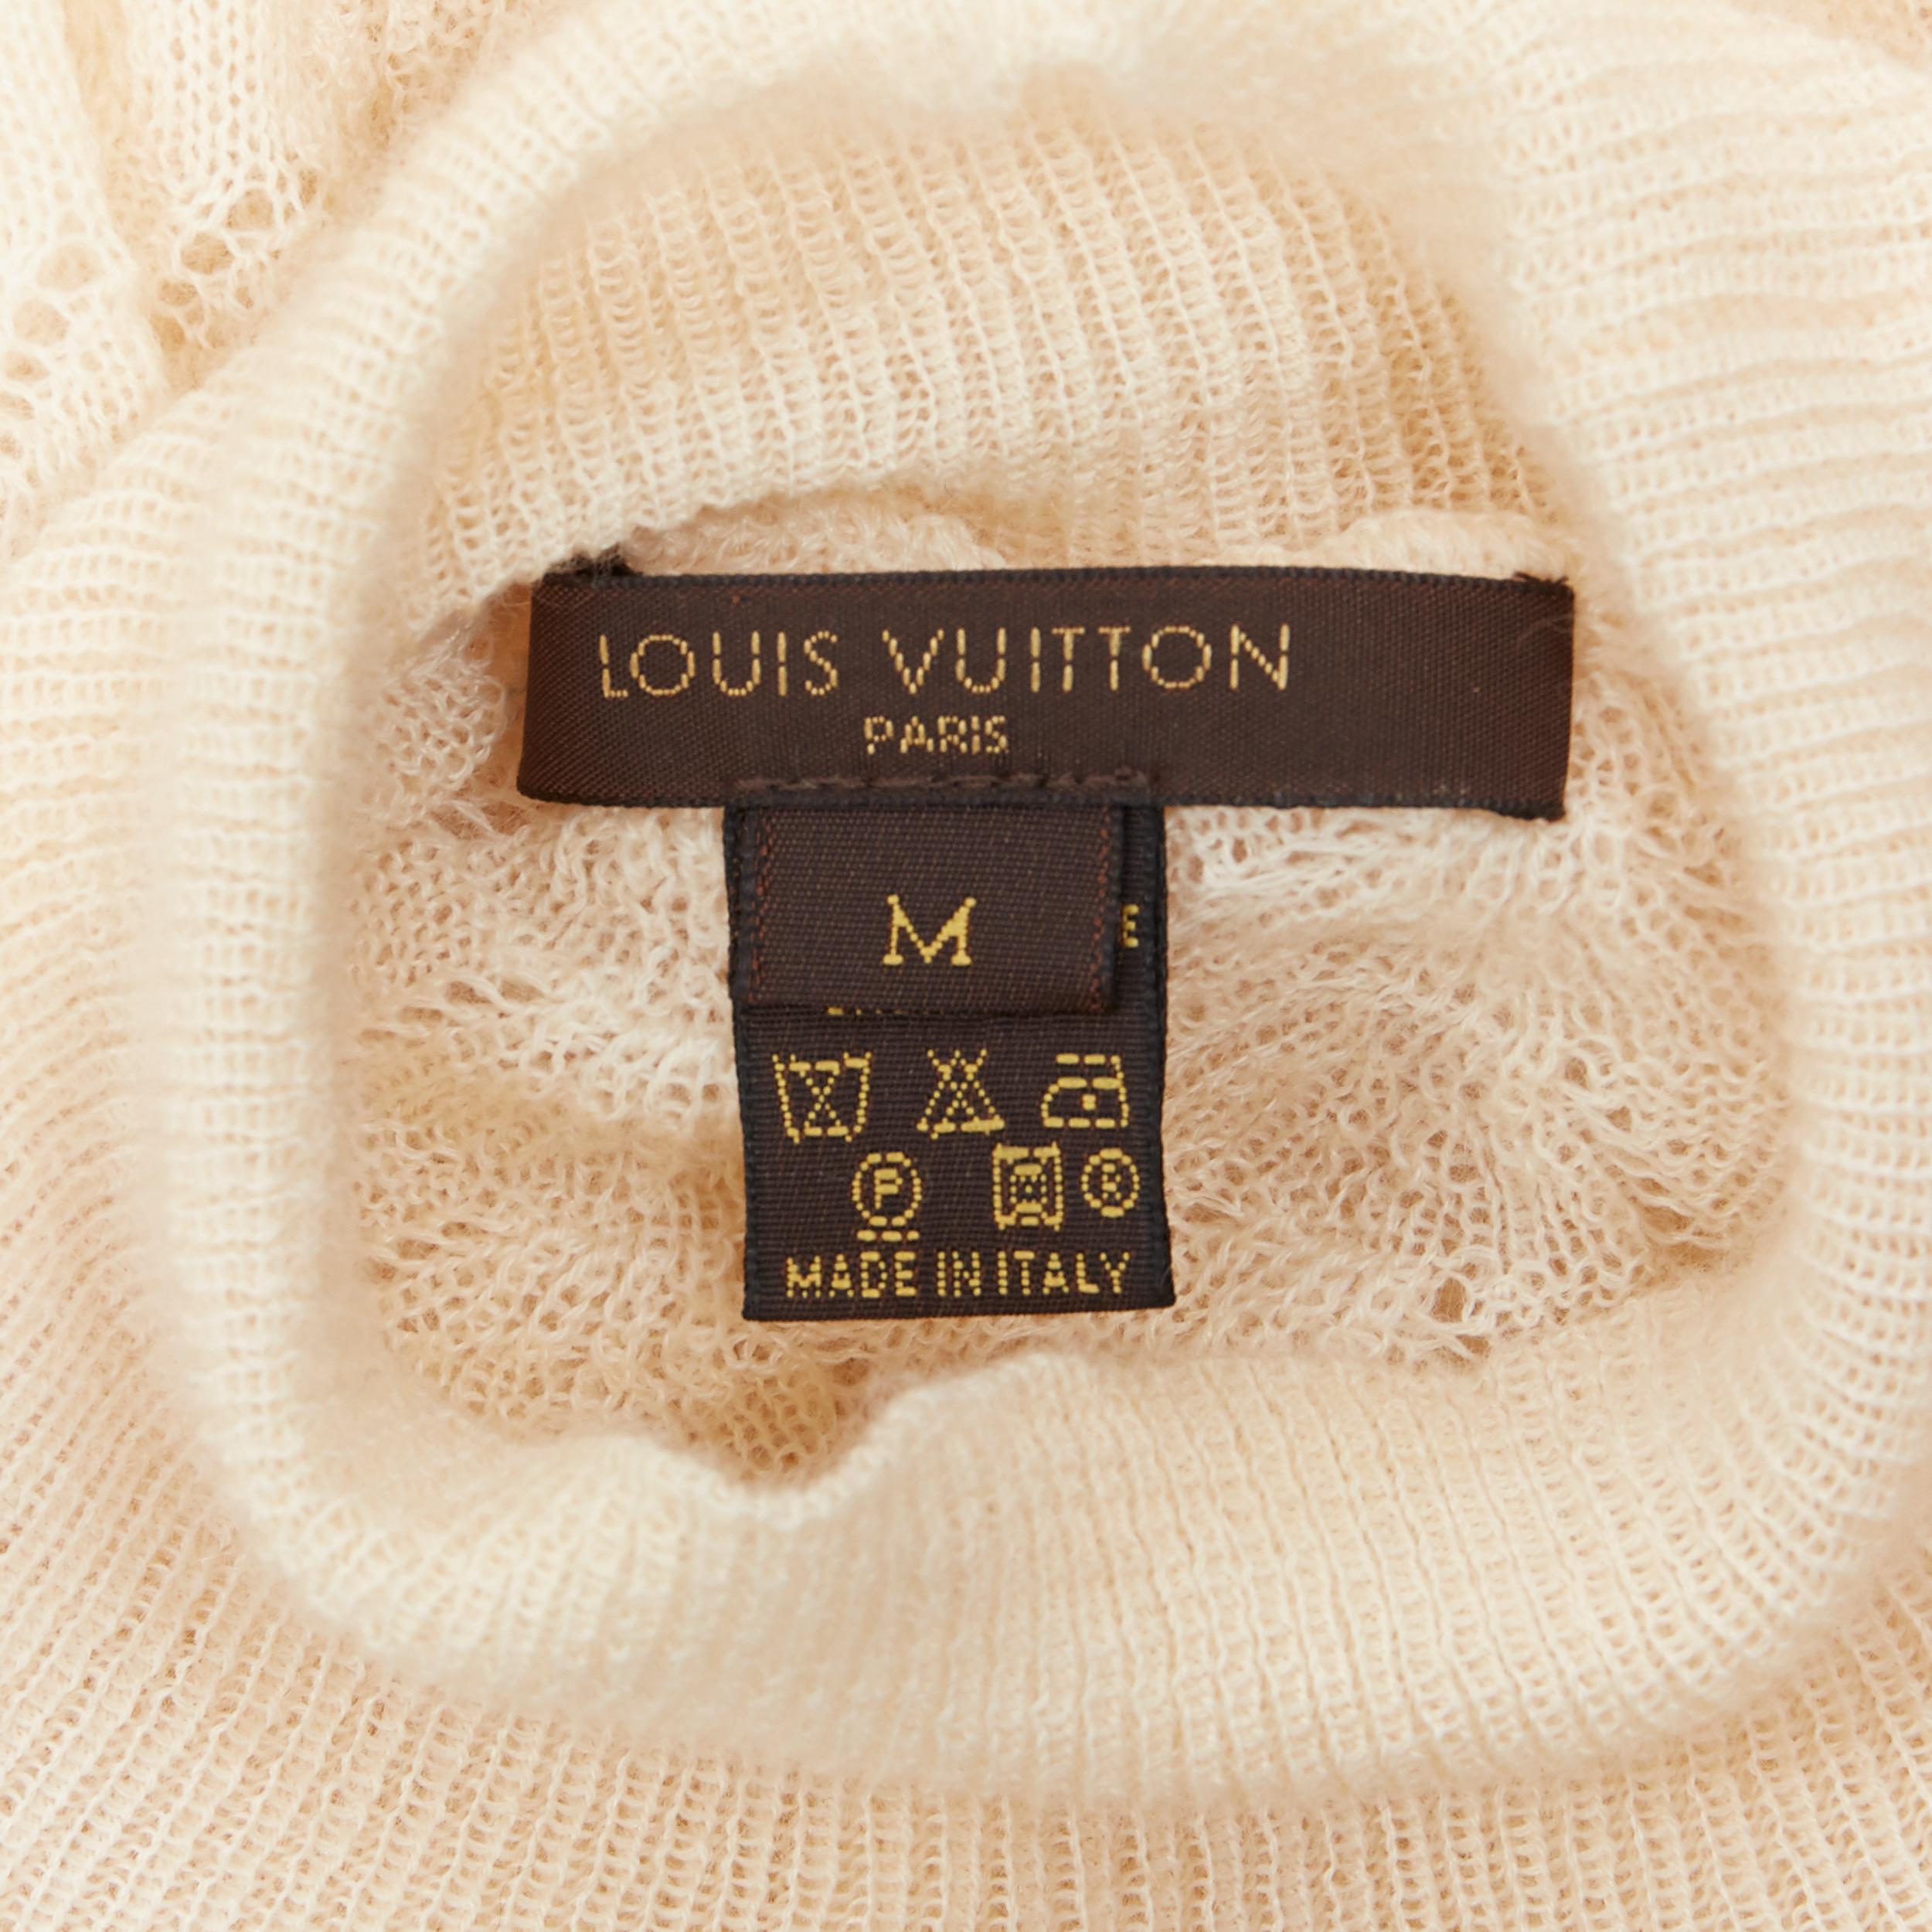 LOUIS VUITTON 100% cashmere cream beige lace knit  turtleneck sweater top M 3